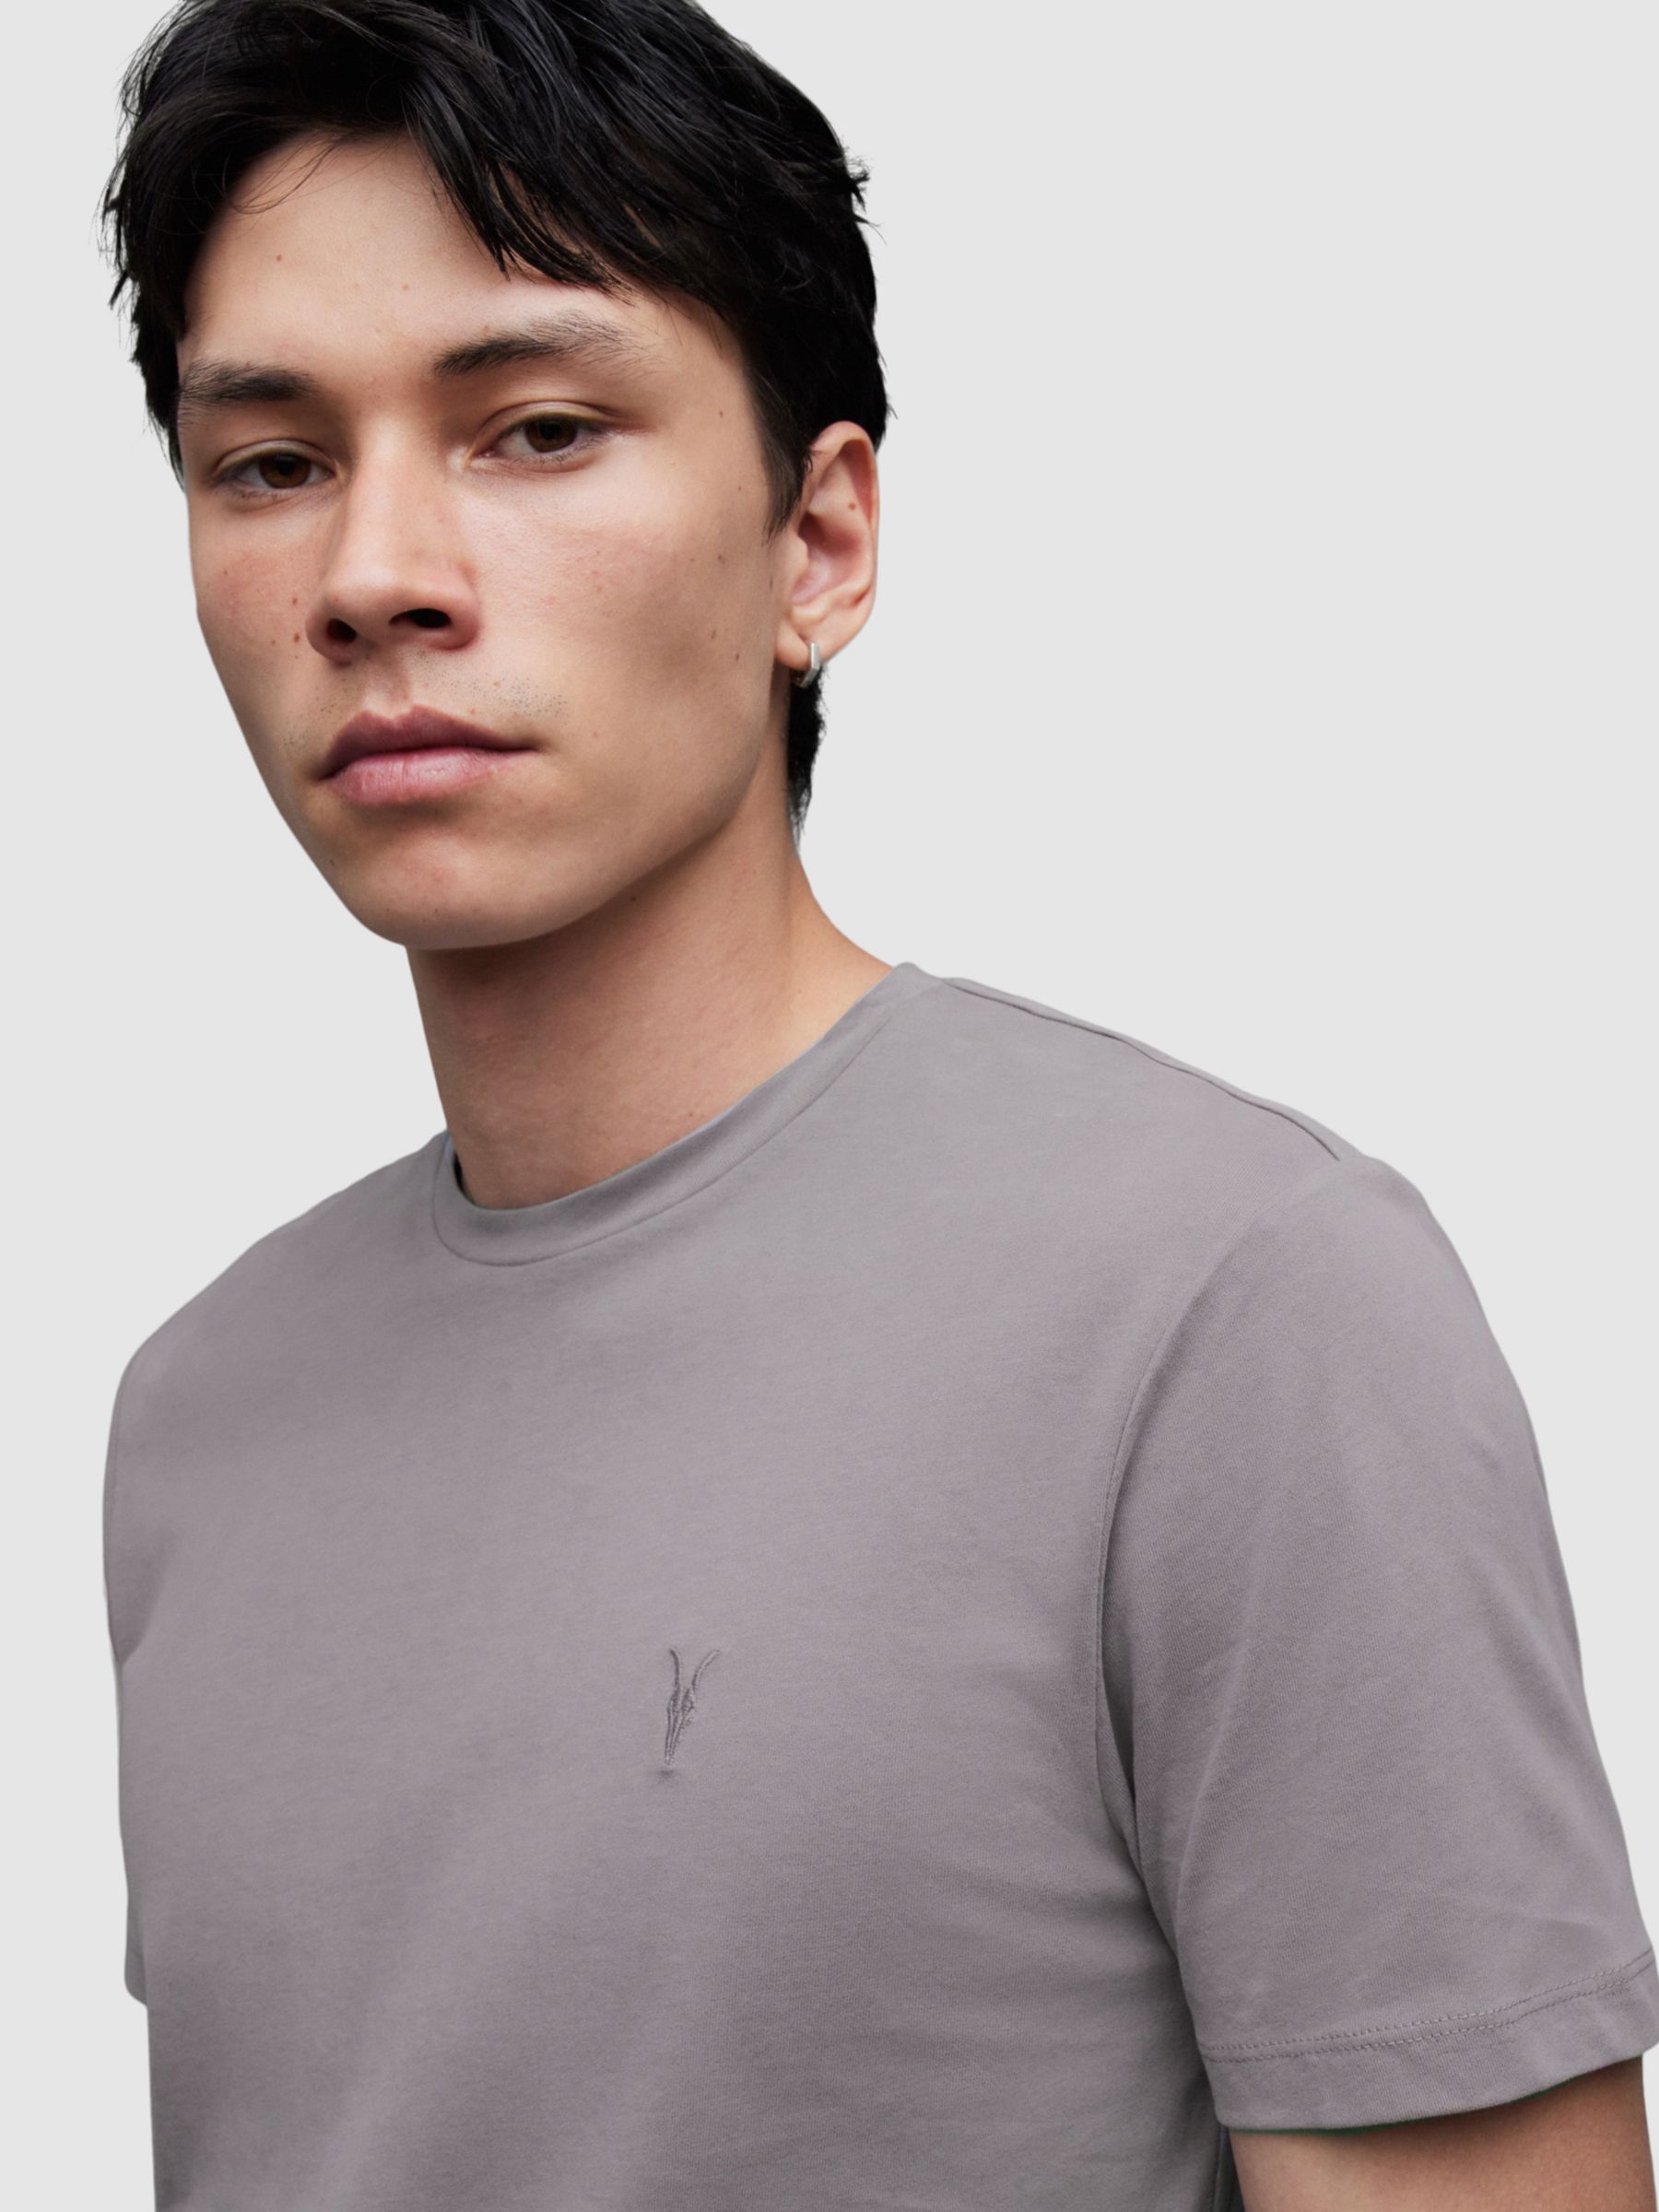 AllSaints Brace Crew T-Shirt, Aluminium Grey at John Lewis & Partners